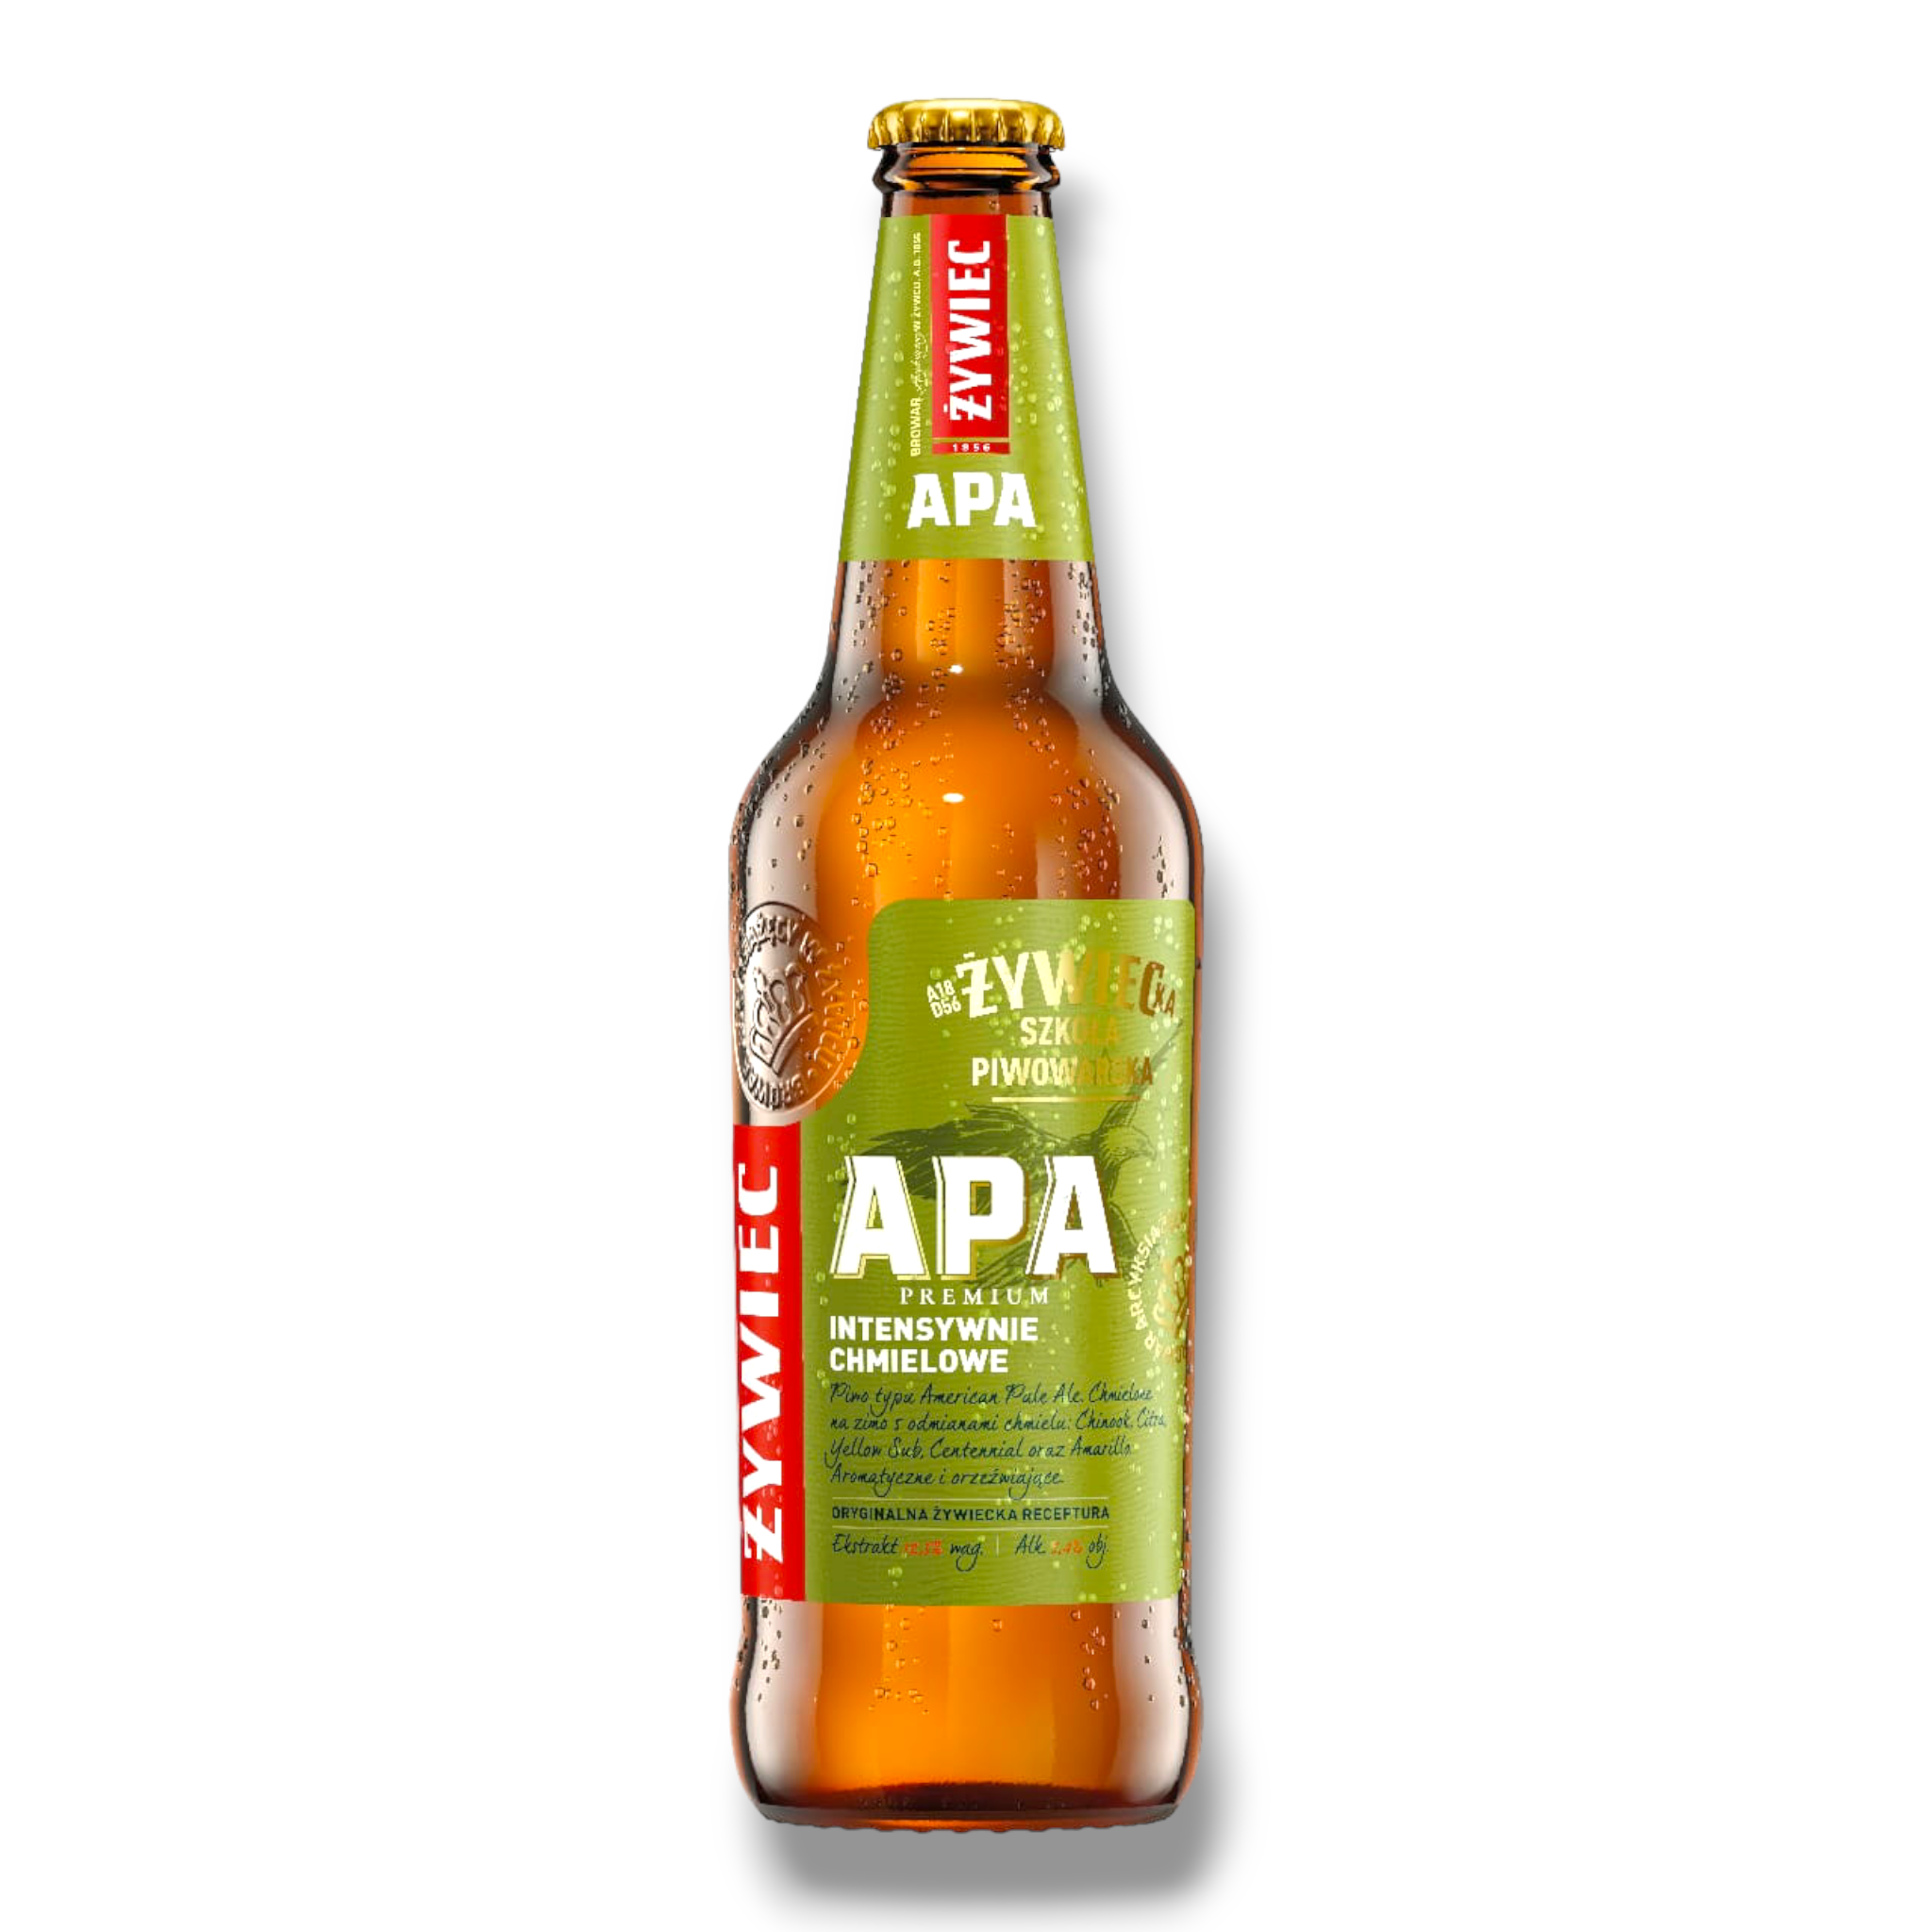 Zywiec APA 0,5l - American Pale Ale aus Polen mit 5,4% Vol.